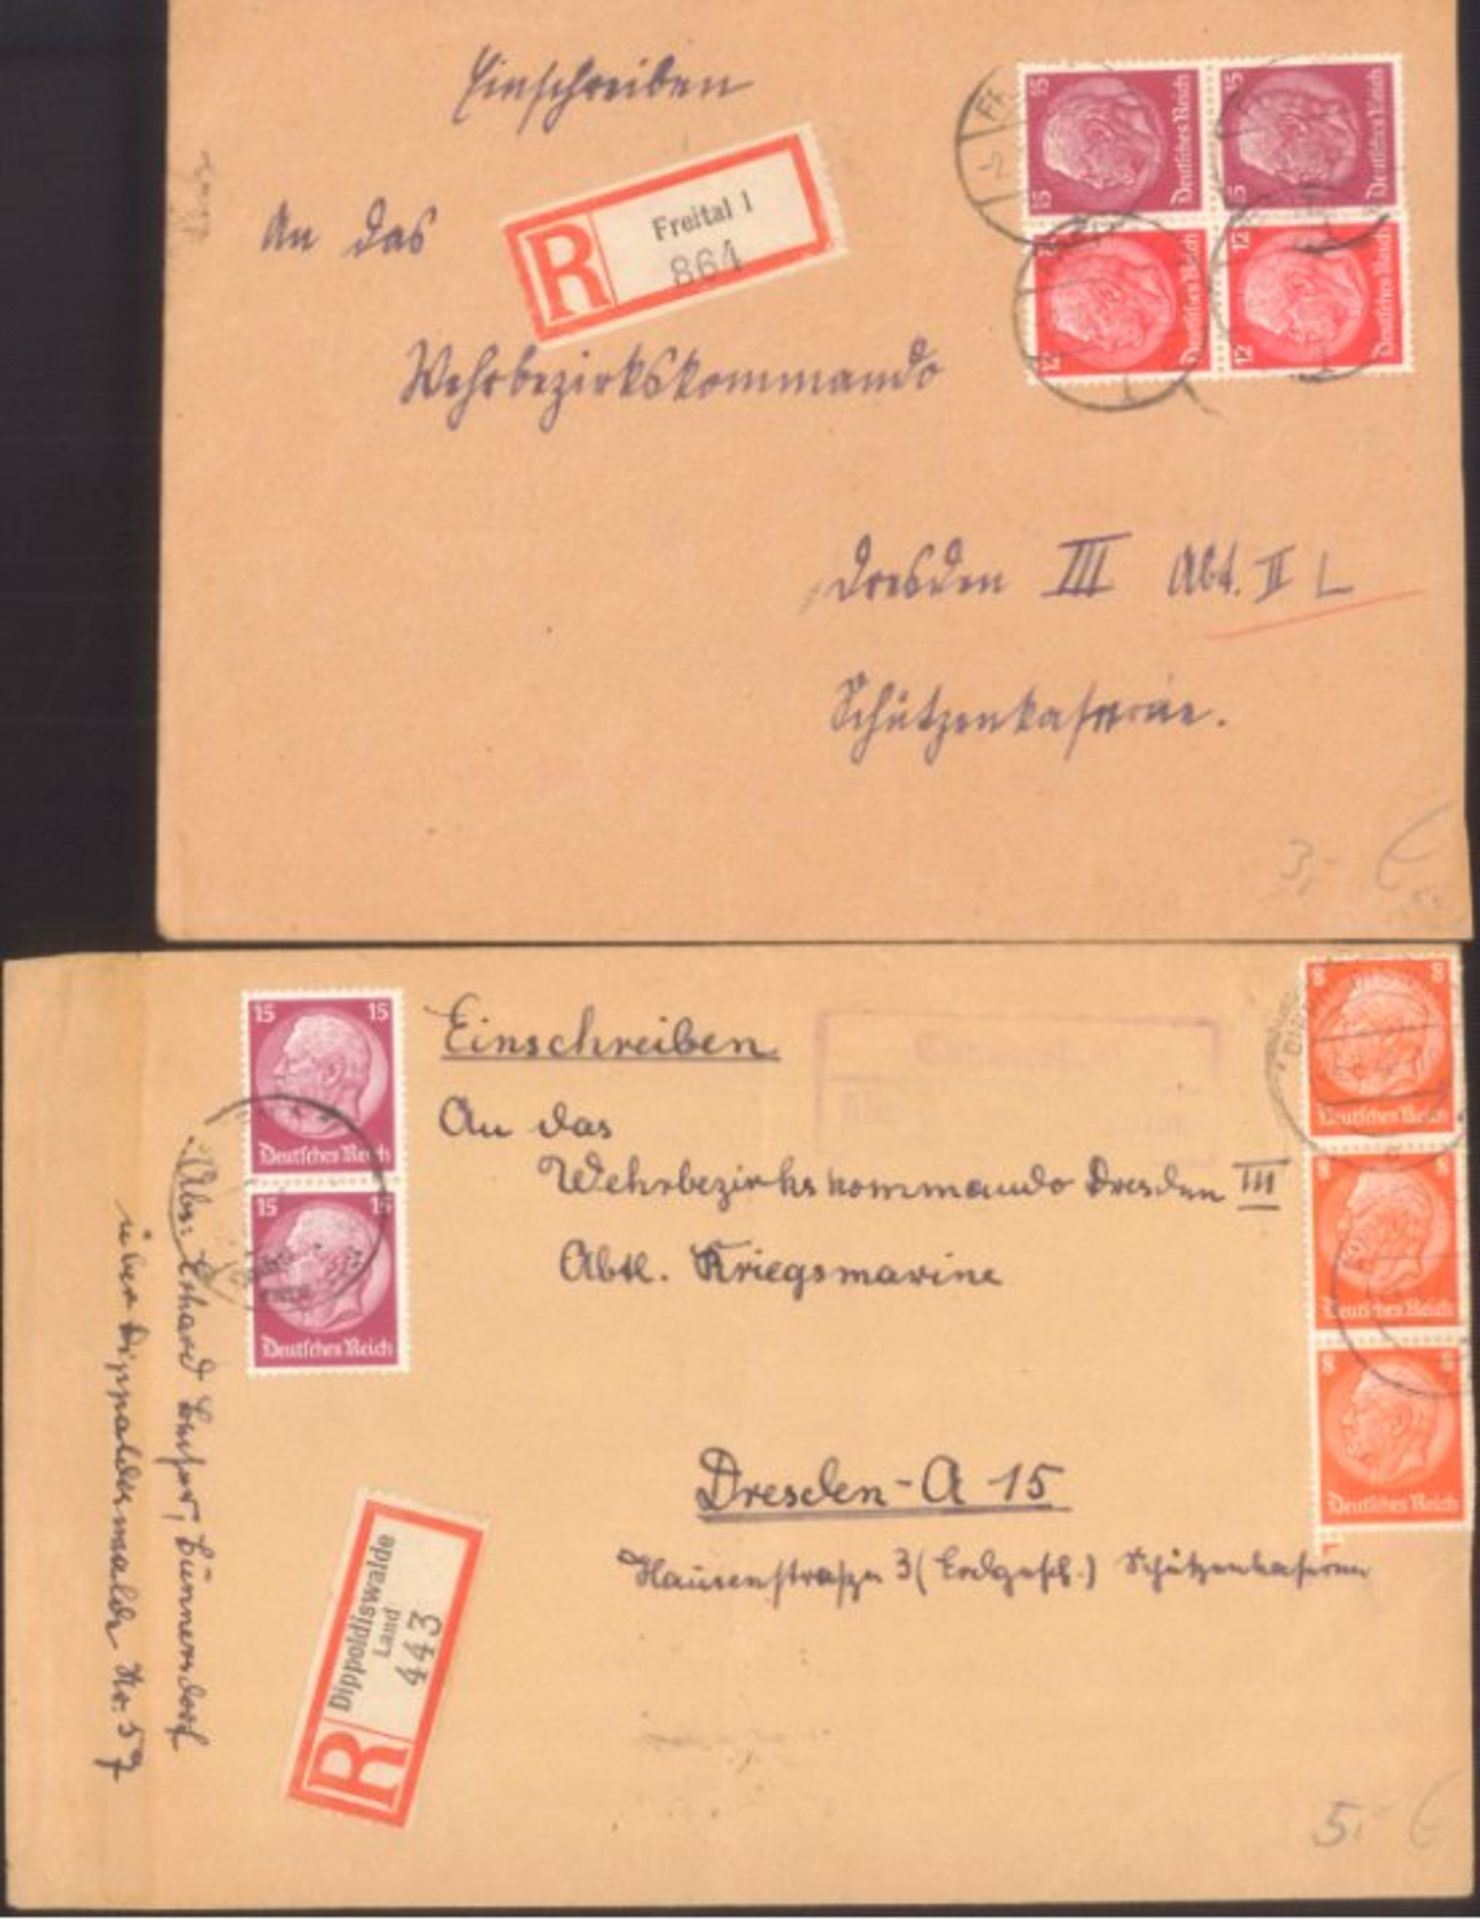 III. REICH 1940, KRIEGSMARINEEinschreiben von DIPPOLDISWALDE an das WEHRBEZIRKSKOMMANDODRESDEN III -